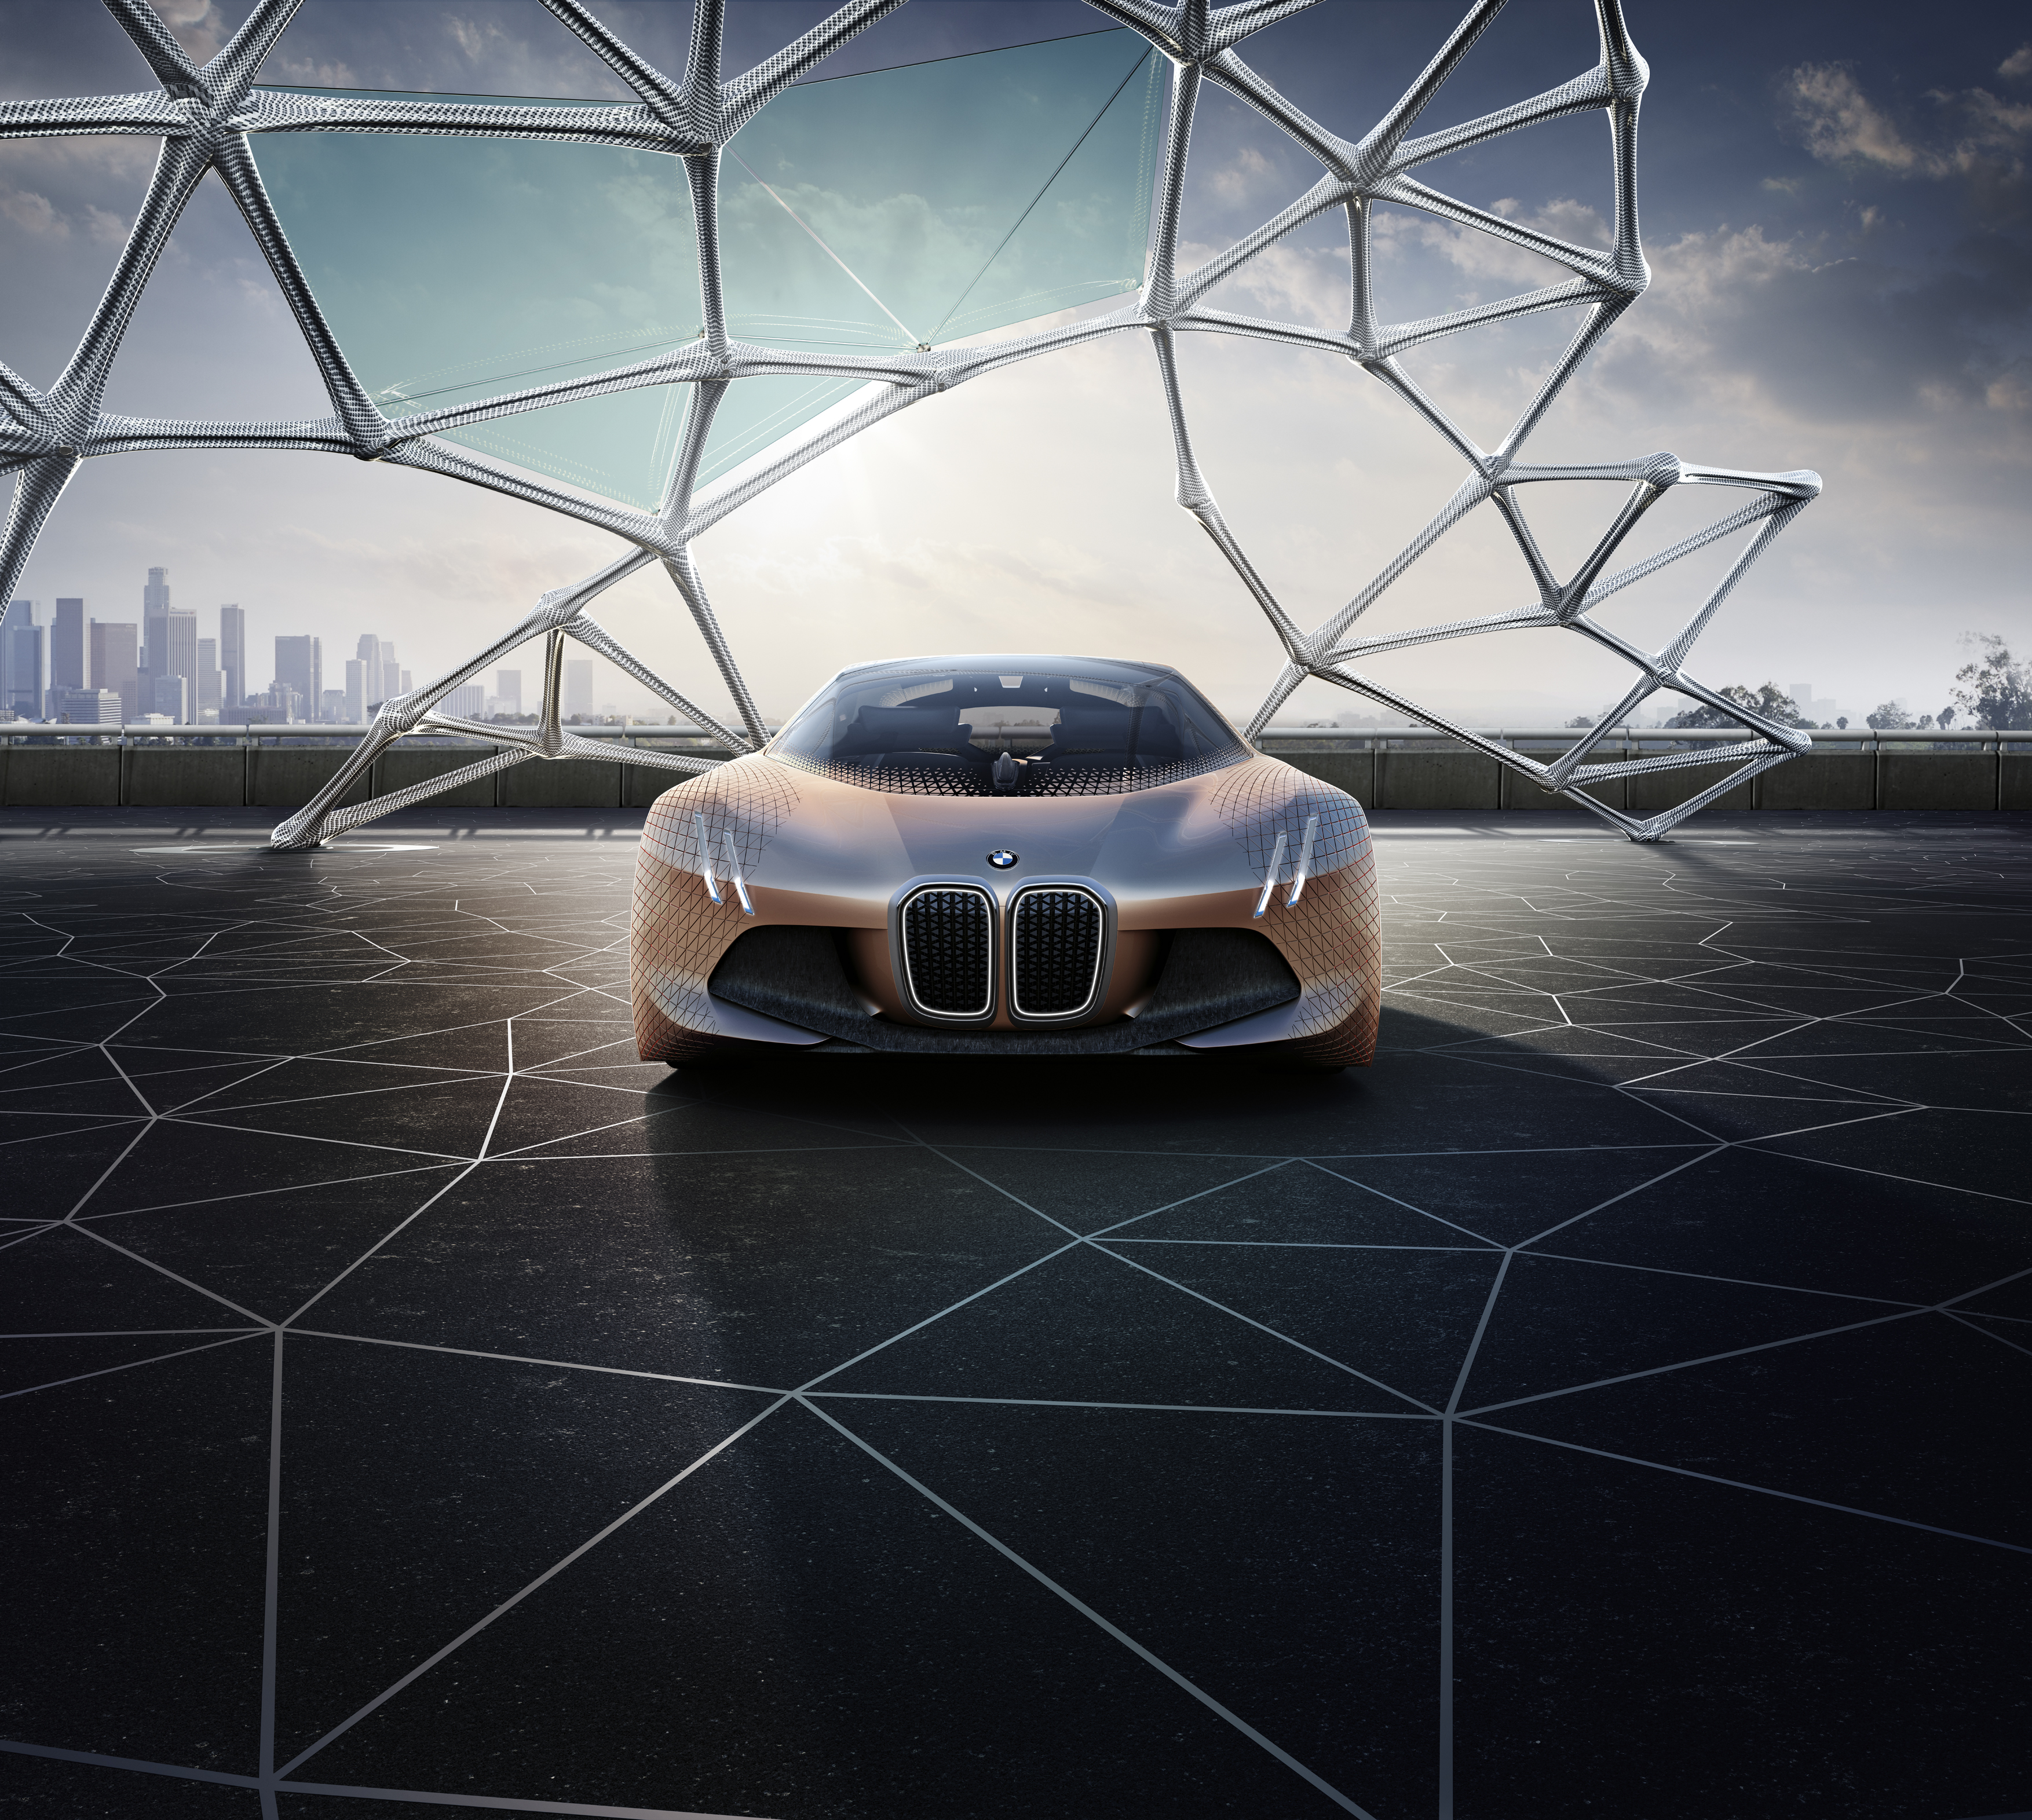 Изменение геометрии автомобиля. Концепт BMW Vision next 100. BMW next 100. БМВ ВИЗИОН Некст 100. BMW next 100 (2016).